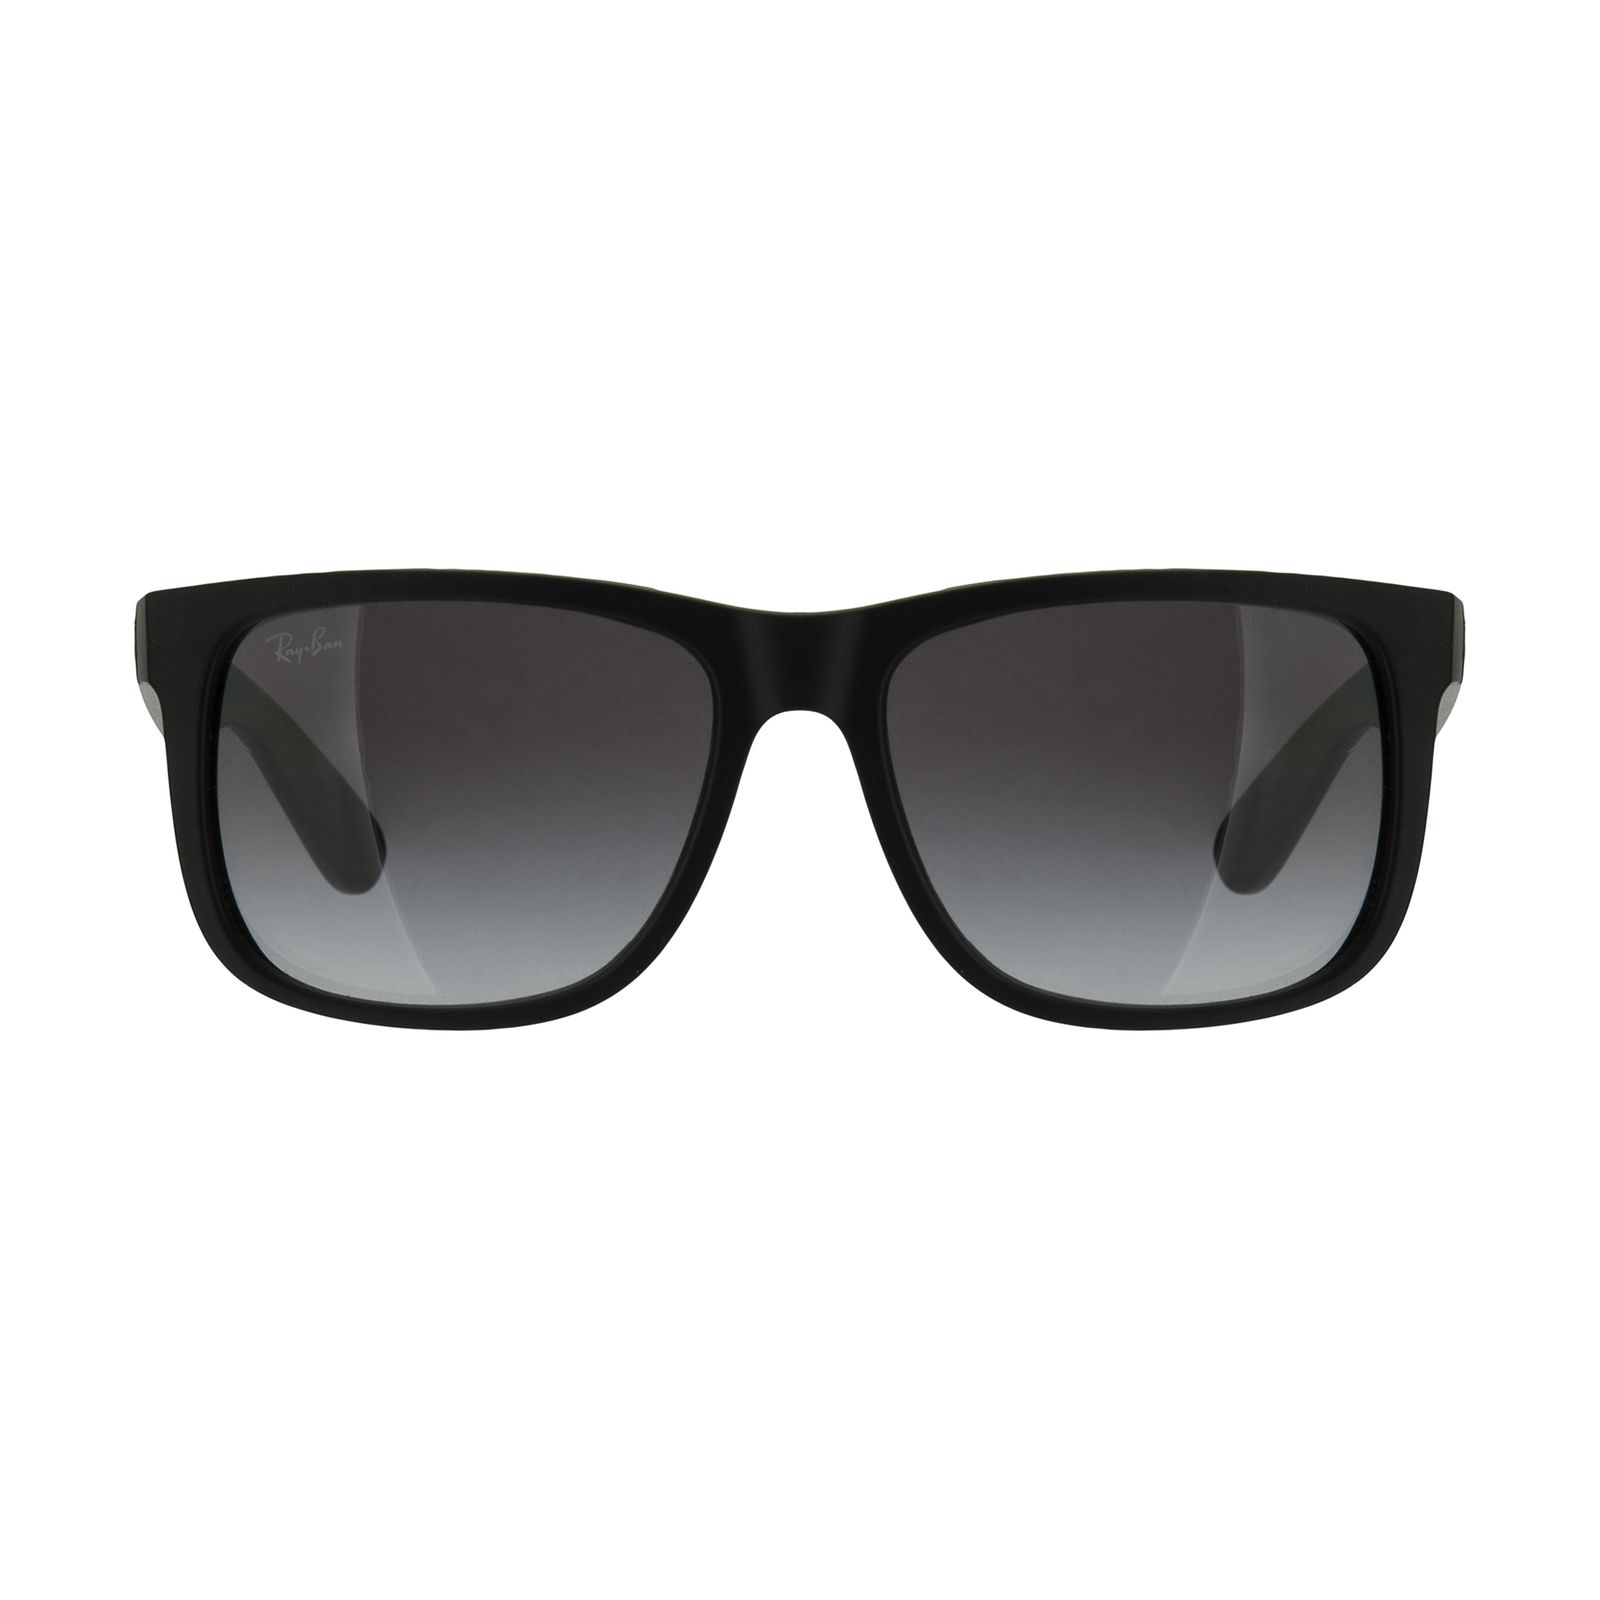 عینک آفتابی ری بن مدل RB4165S 06018G 55 -  - 1